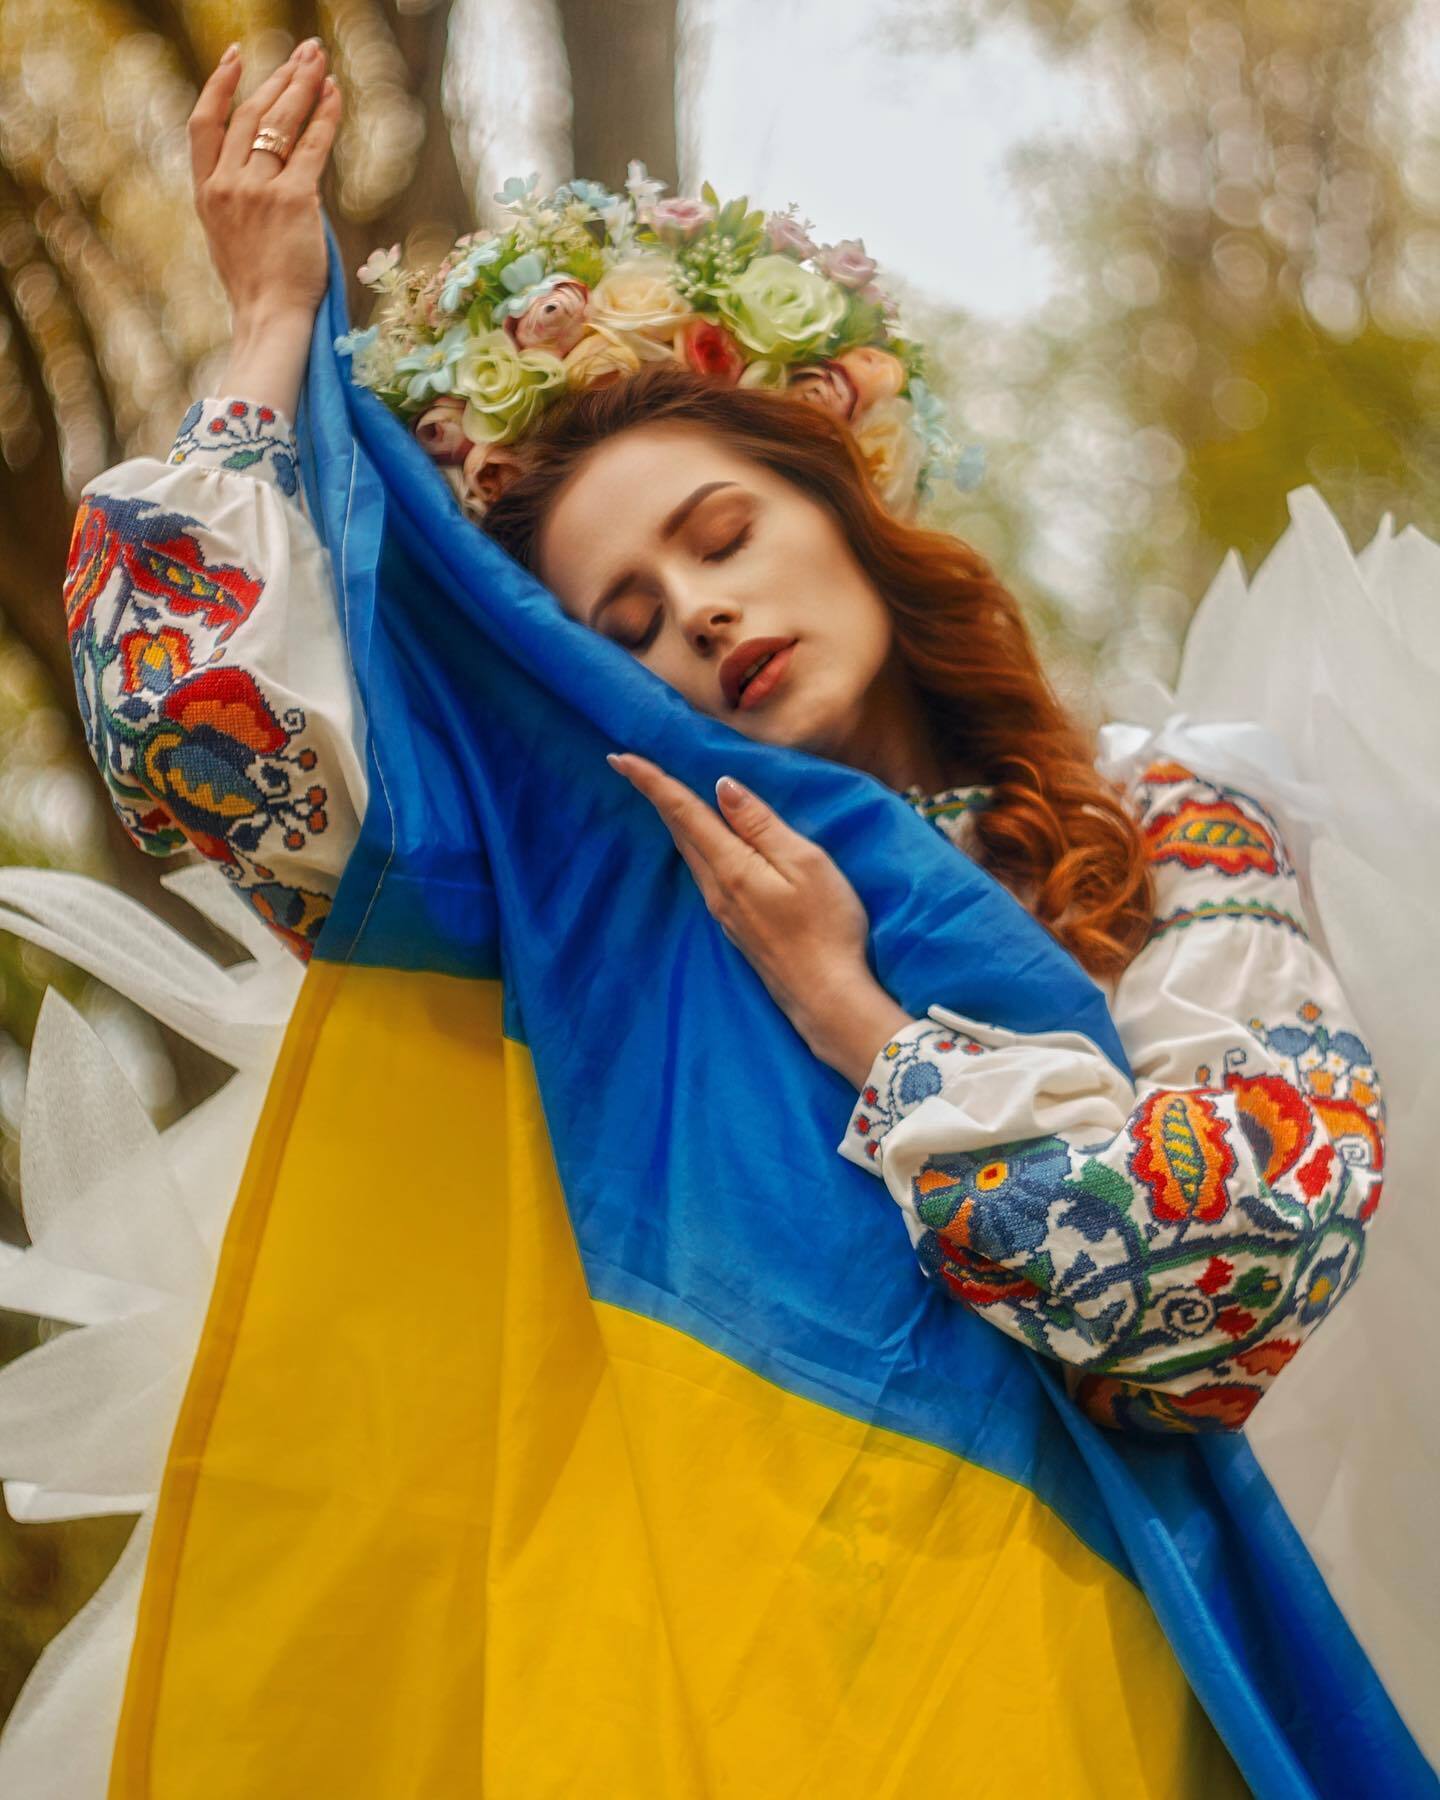 Актриса считает, что война в Украине стала следствием безразличия людей.